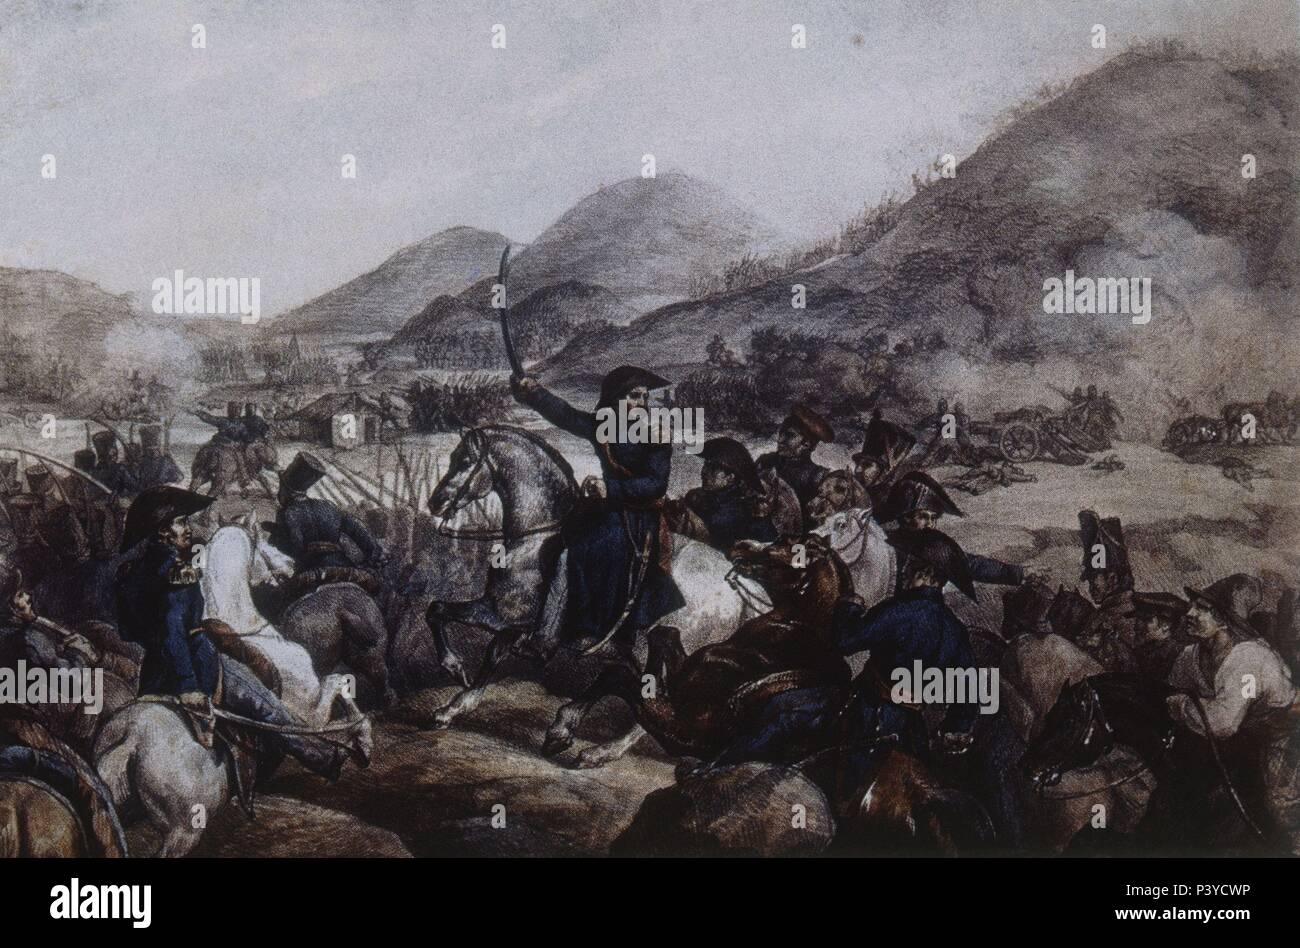 EL GENERAL SAN MARTIN EN LA BATALLA DE CHACABUCO EL 12 DE FEBRERO DE 1817. Stock Photo